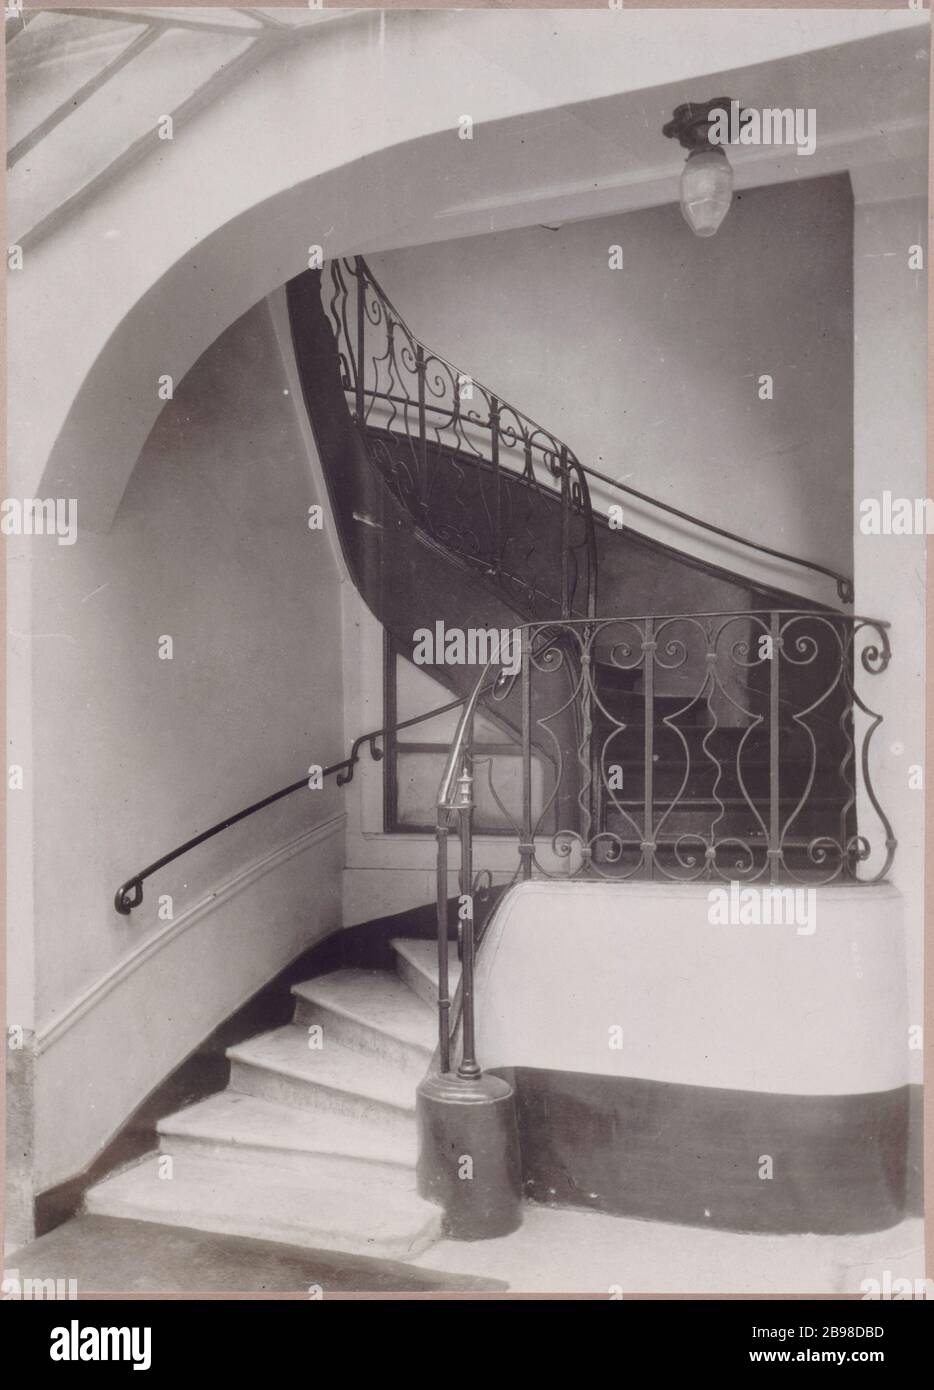 12 RUE DE CONDE 12 rue de Condé, escalier de l'hôtel Sourdéac. Paris (VIème arr.). Photo de Charles Lansiaux (1855-1939). Paris, musée Carnavalet. Banque D'Images